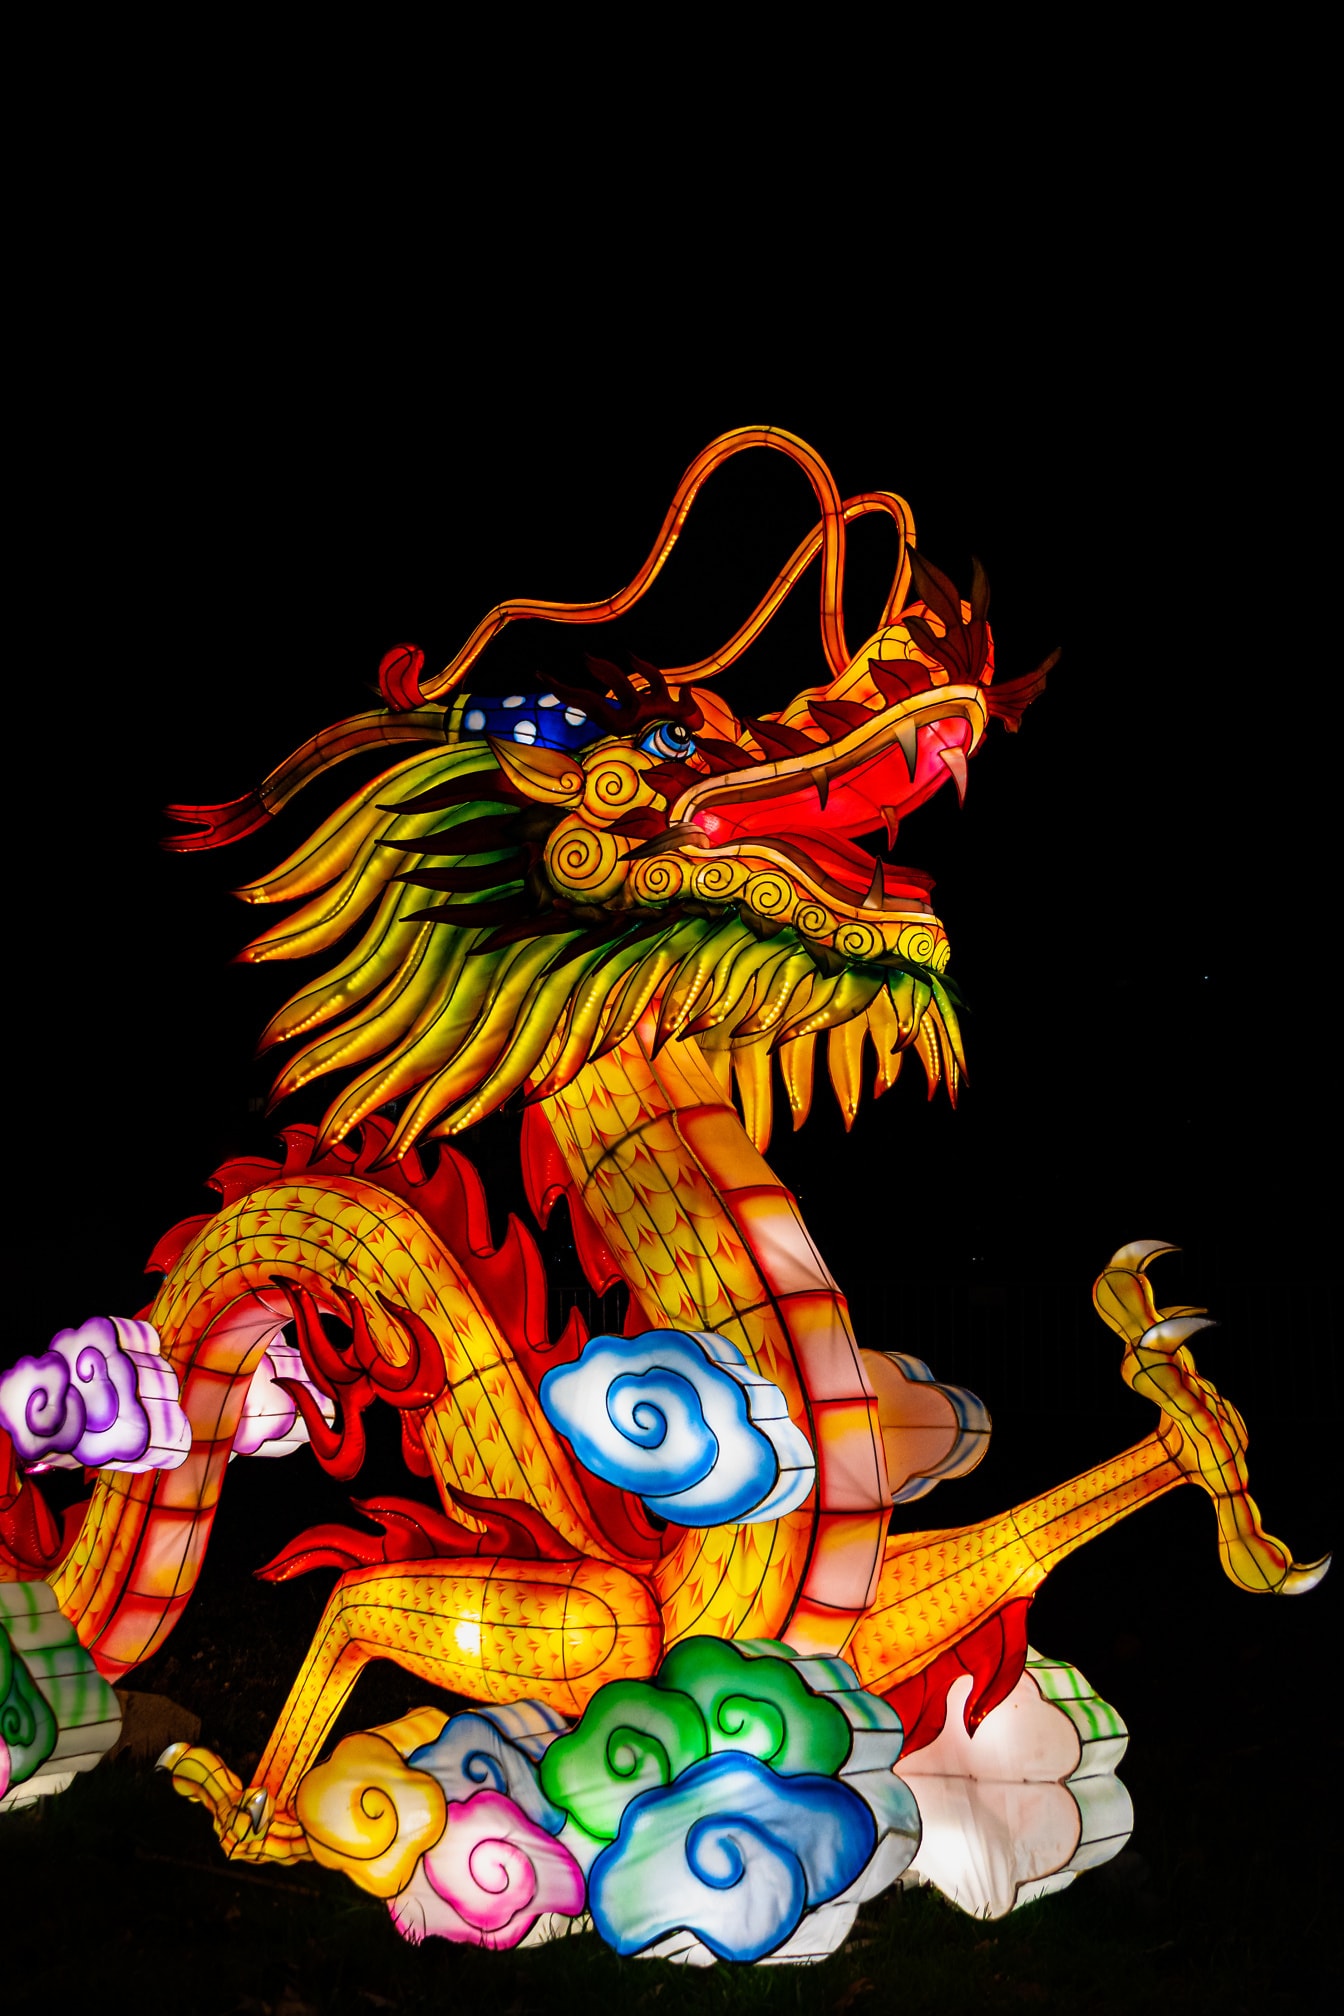 Chinesischer Drache, eine farbenfrohe Skulptur auf dem chinesischen Laternenfest, auch bekannt als Shangyuan-Fest